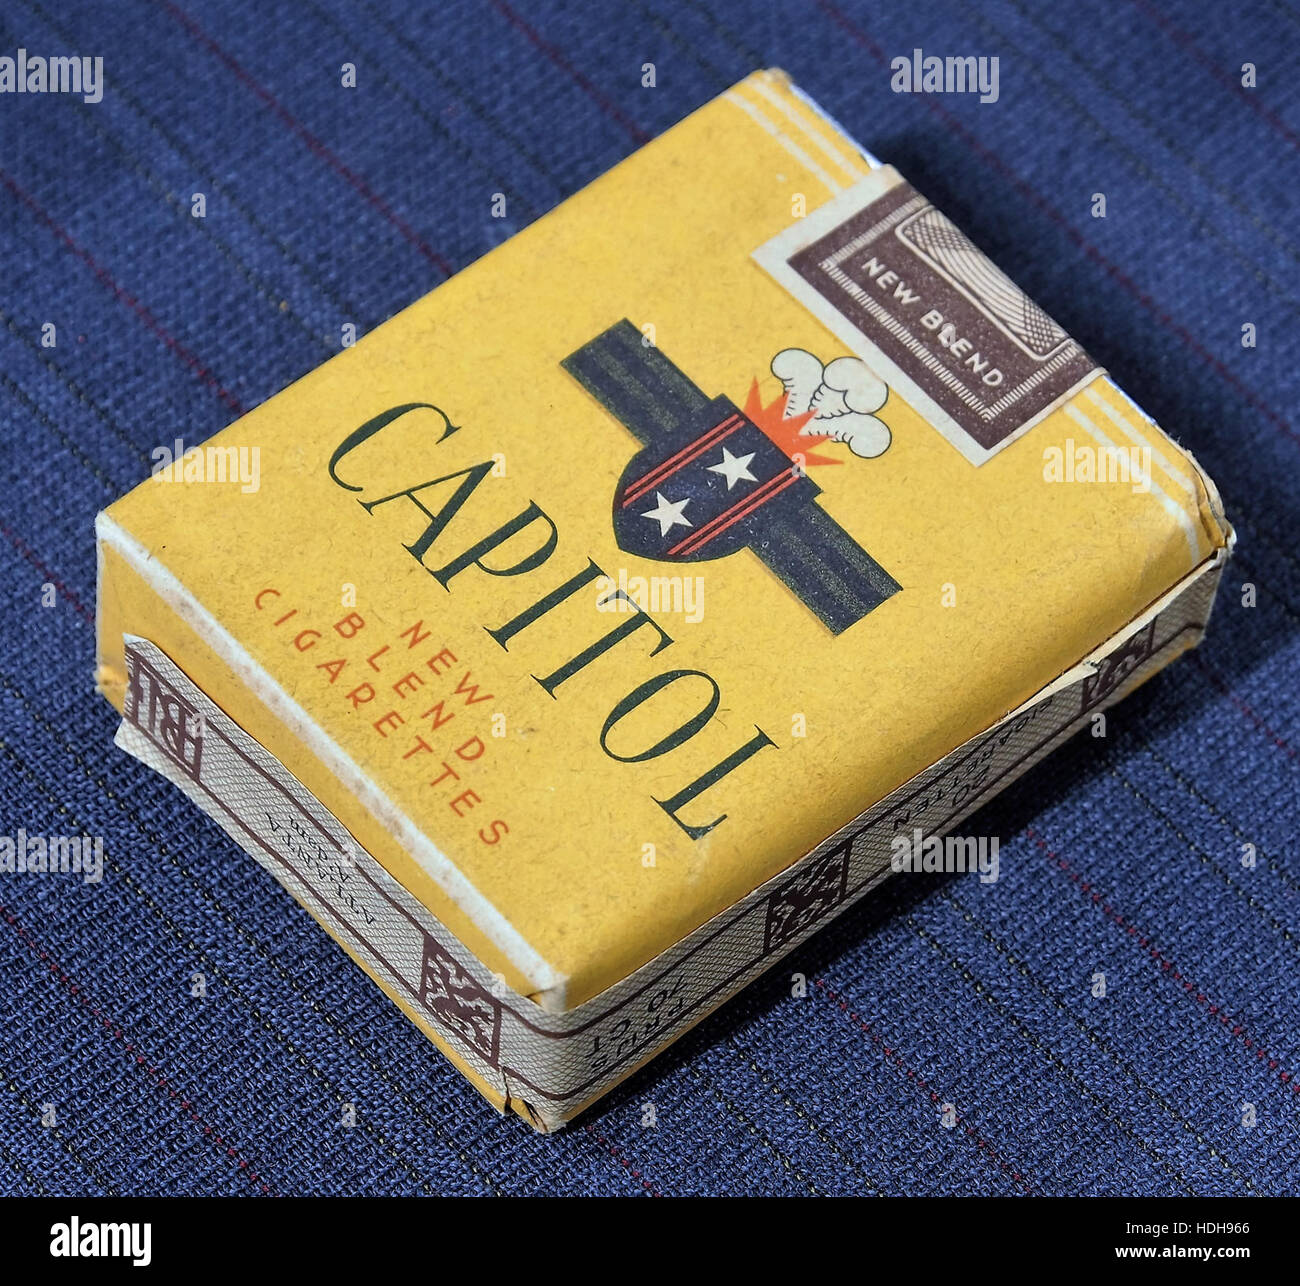 Capitol cigarettes pack pic1 Banque D'Images